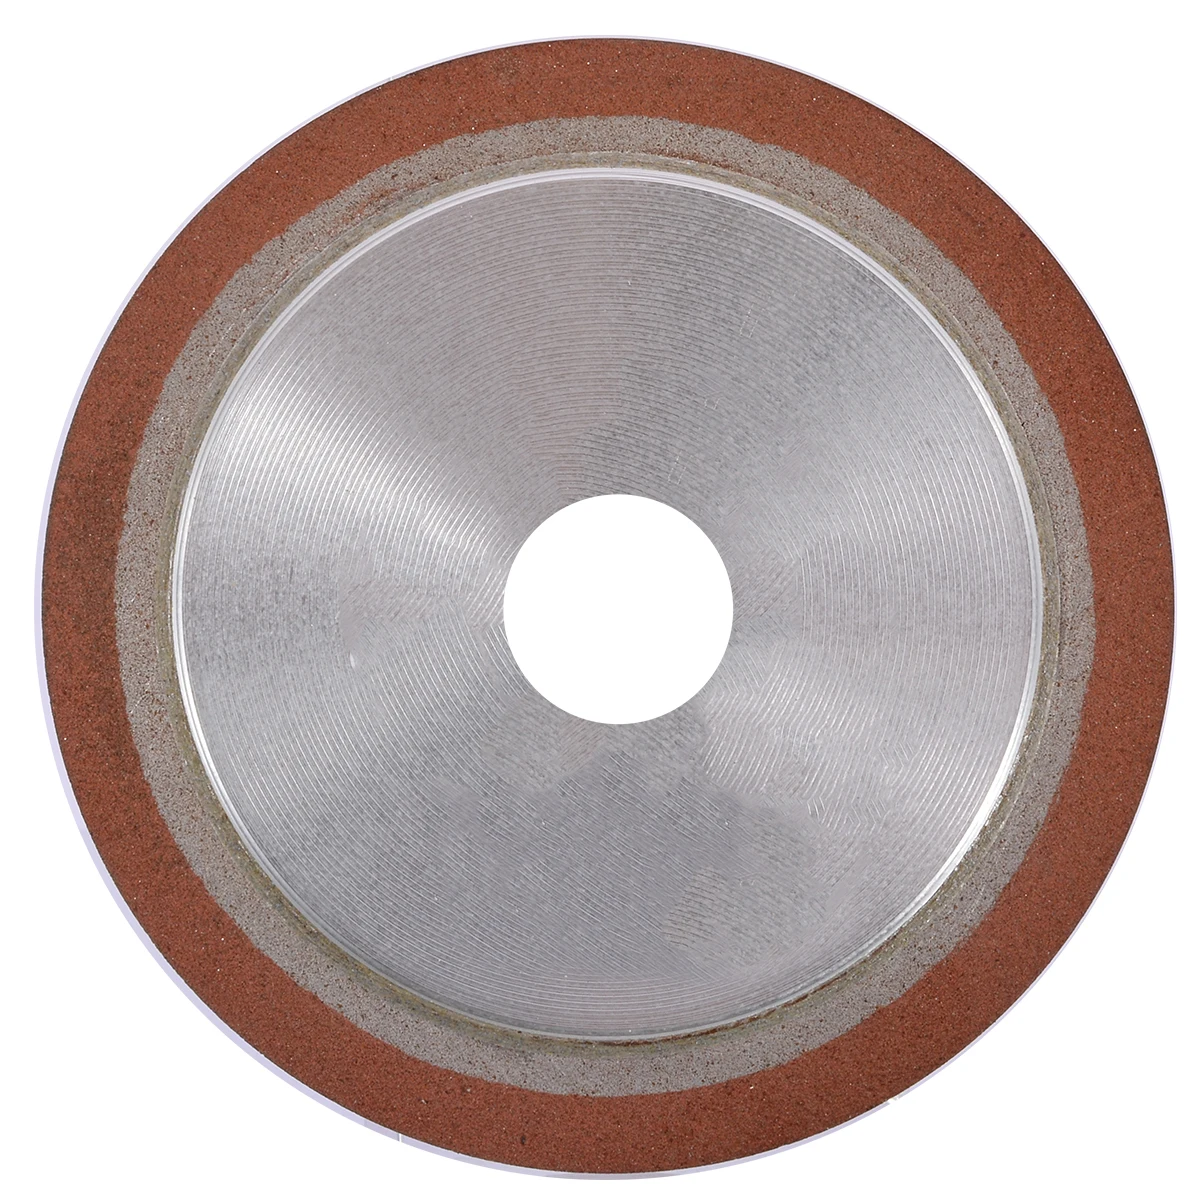 125 мм 150 зернистость односторонний конус простой смолы Алмазный шлифовальный круг диск наждачный электроинструмент аксессуары